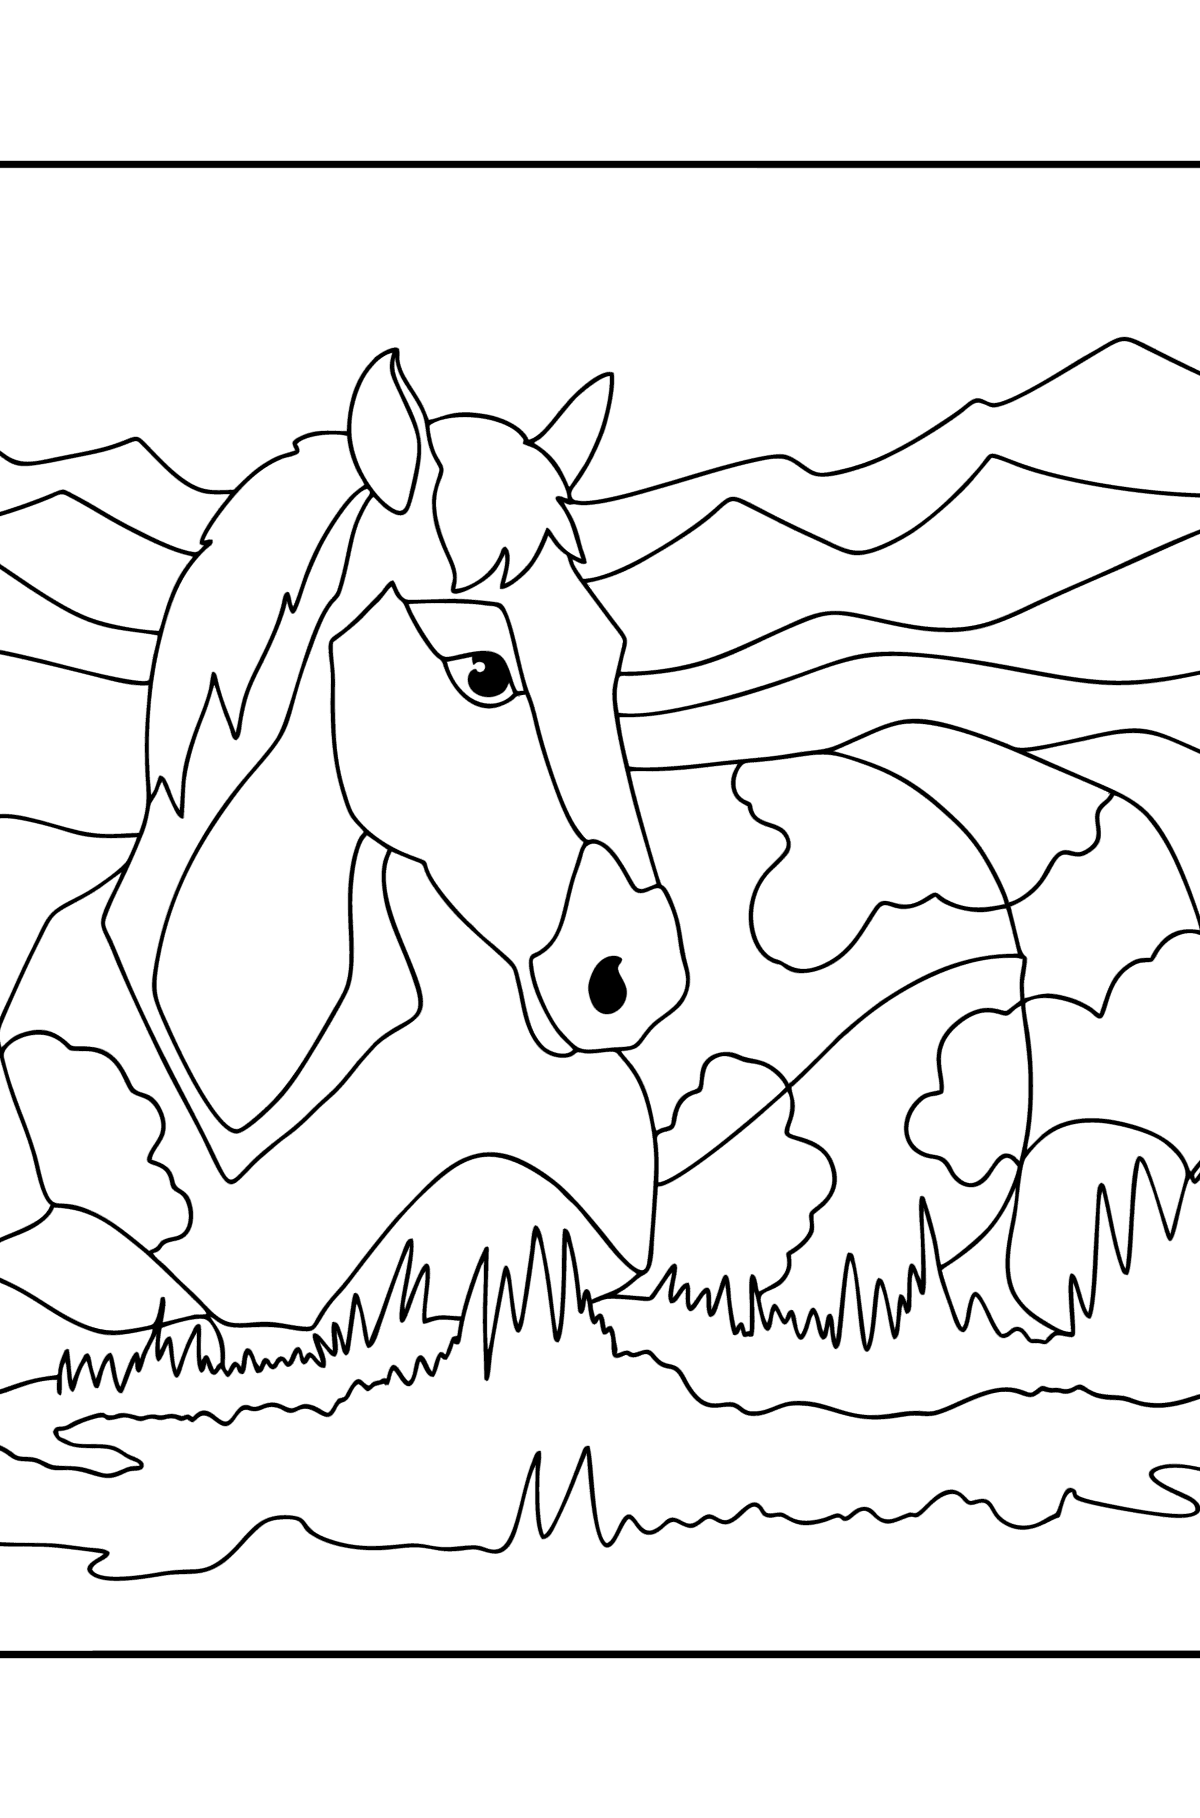 Desenho Cavalo adormecido para colorir - Imagens para Colorir para Crianças